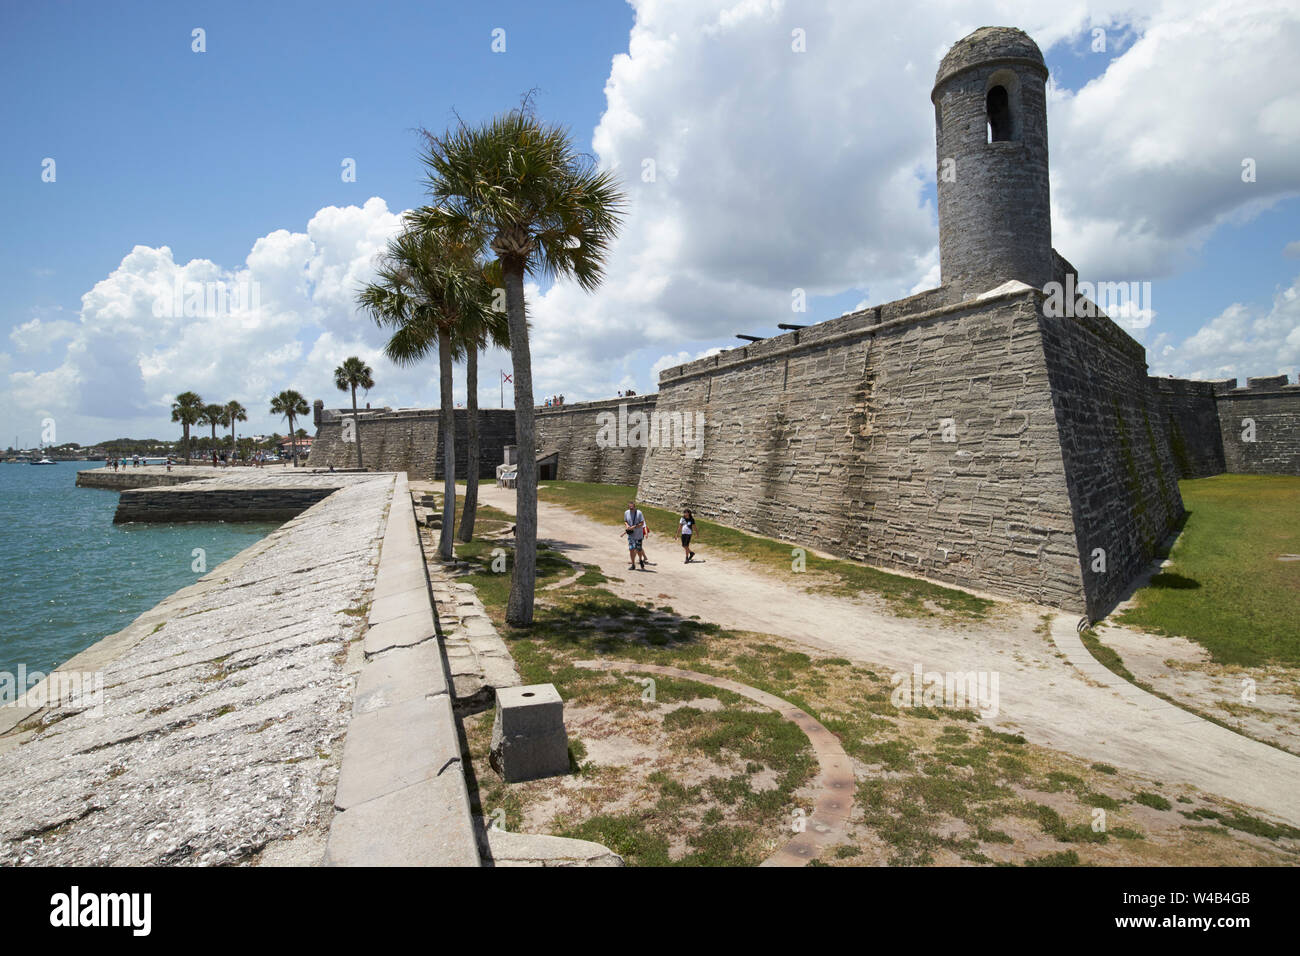 Castillo de San Marcos national monument fort sur les rives de la baie de Matanzas St Augustine en Floride US USA Banque D'Images